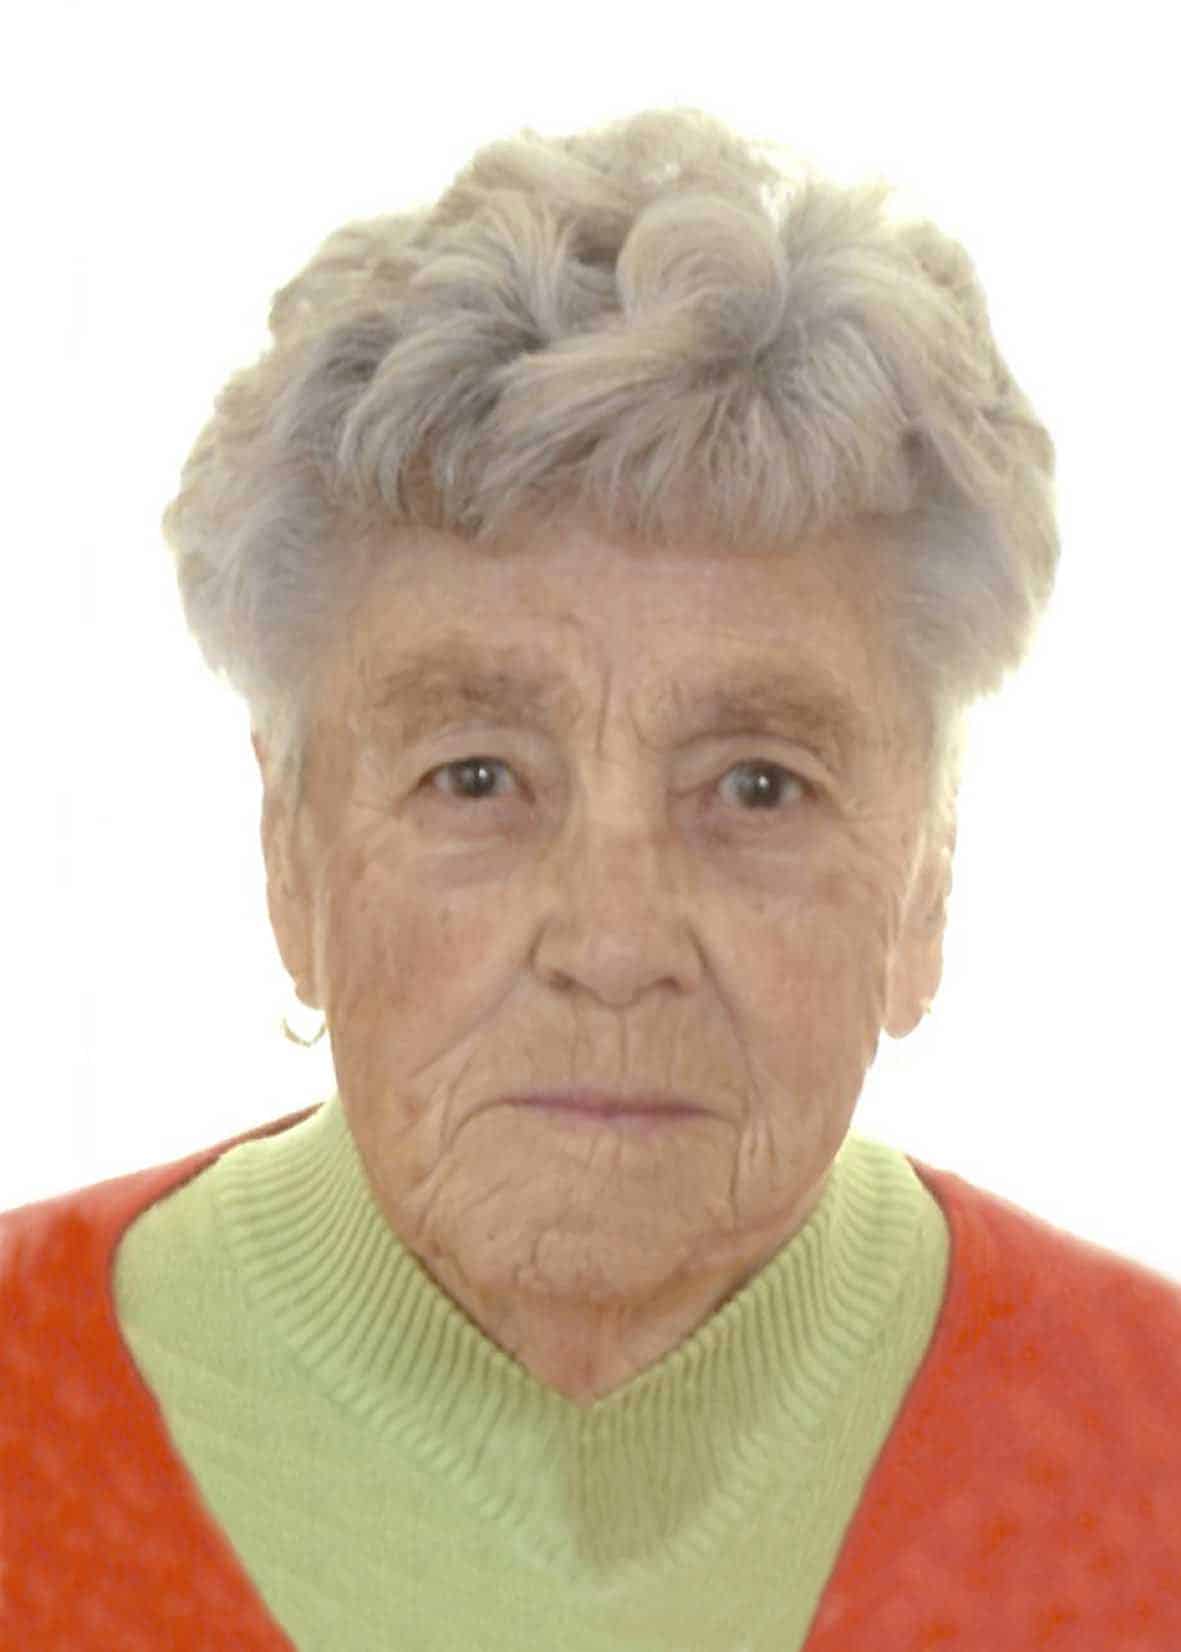 Anna Gneist (90)